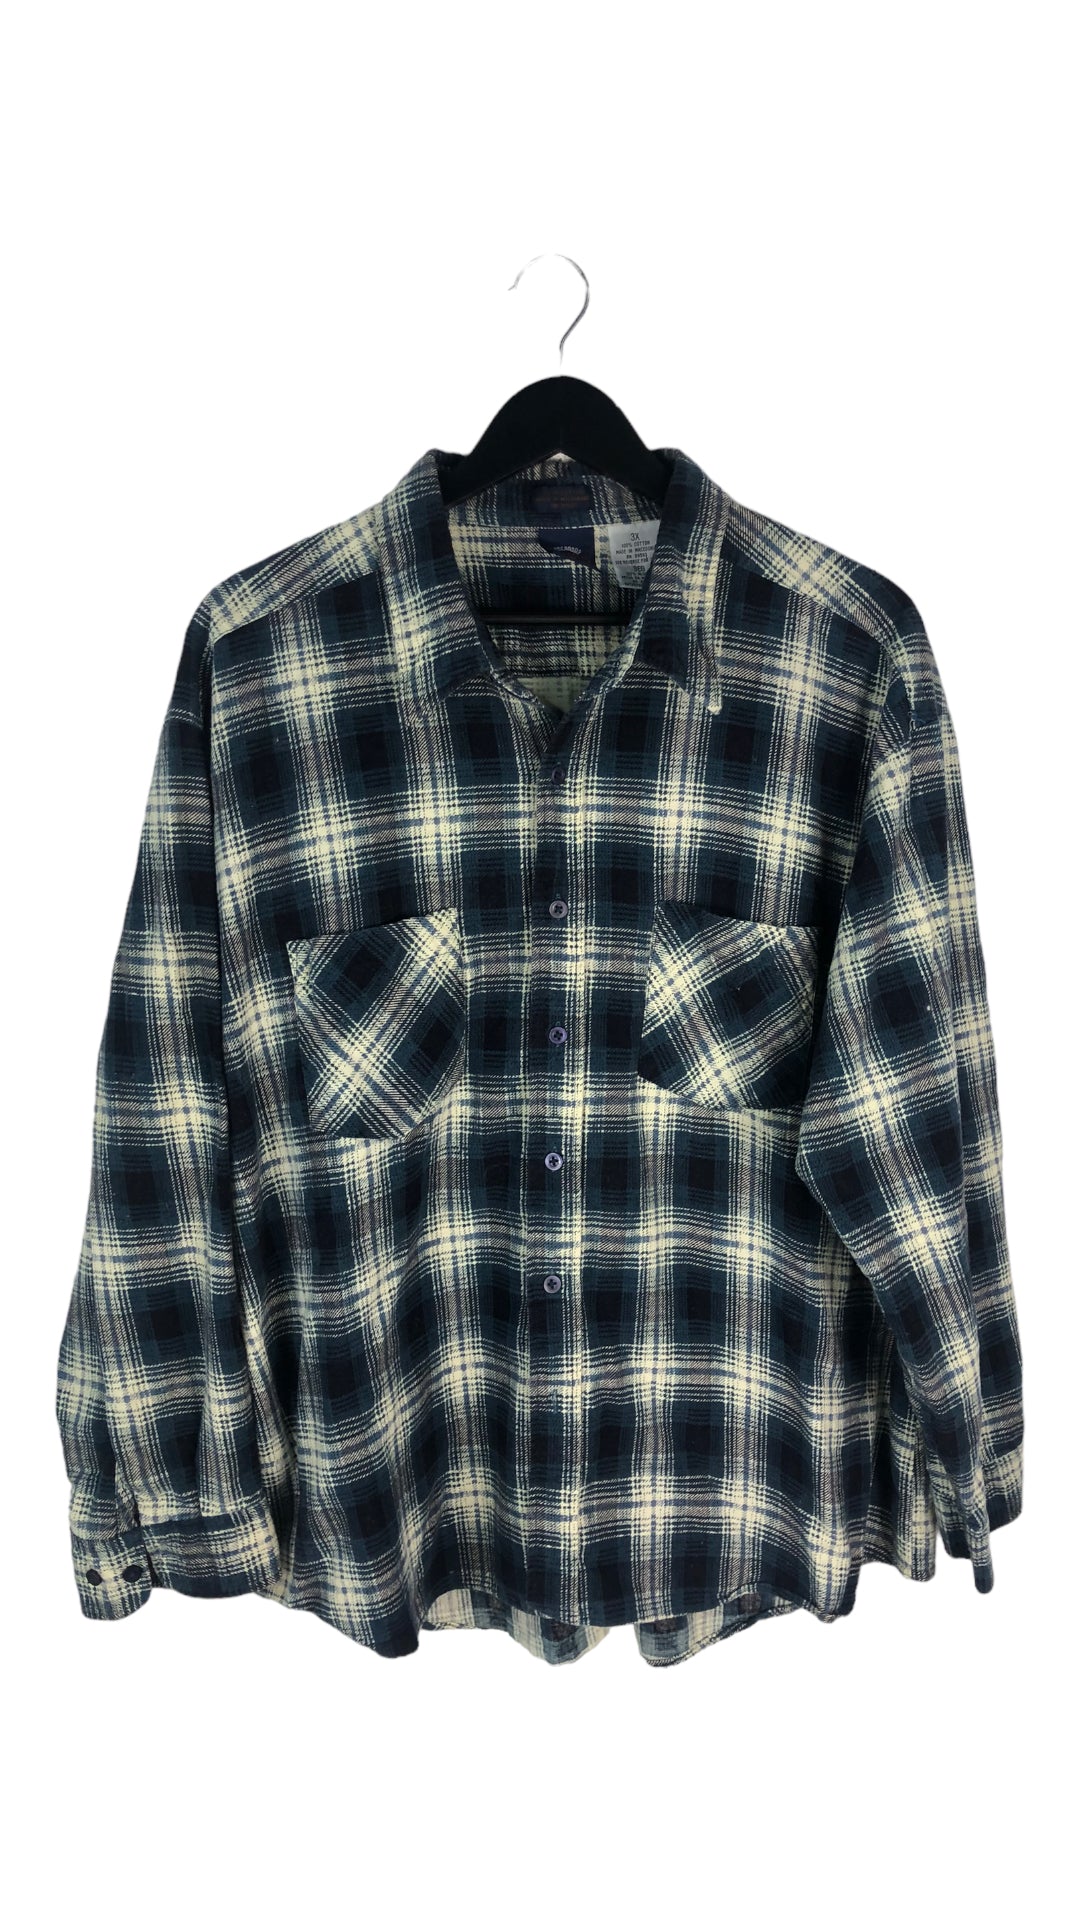 VTG Blue Flannel Button Up Shirt Sz XL/XXL